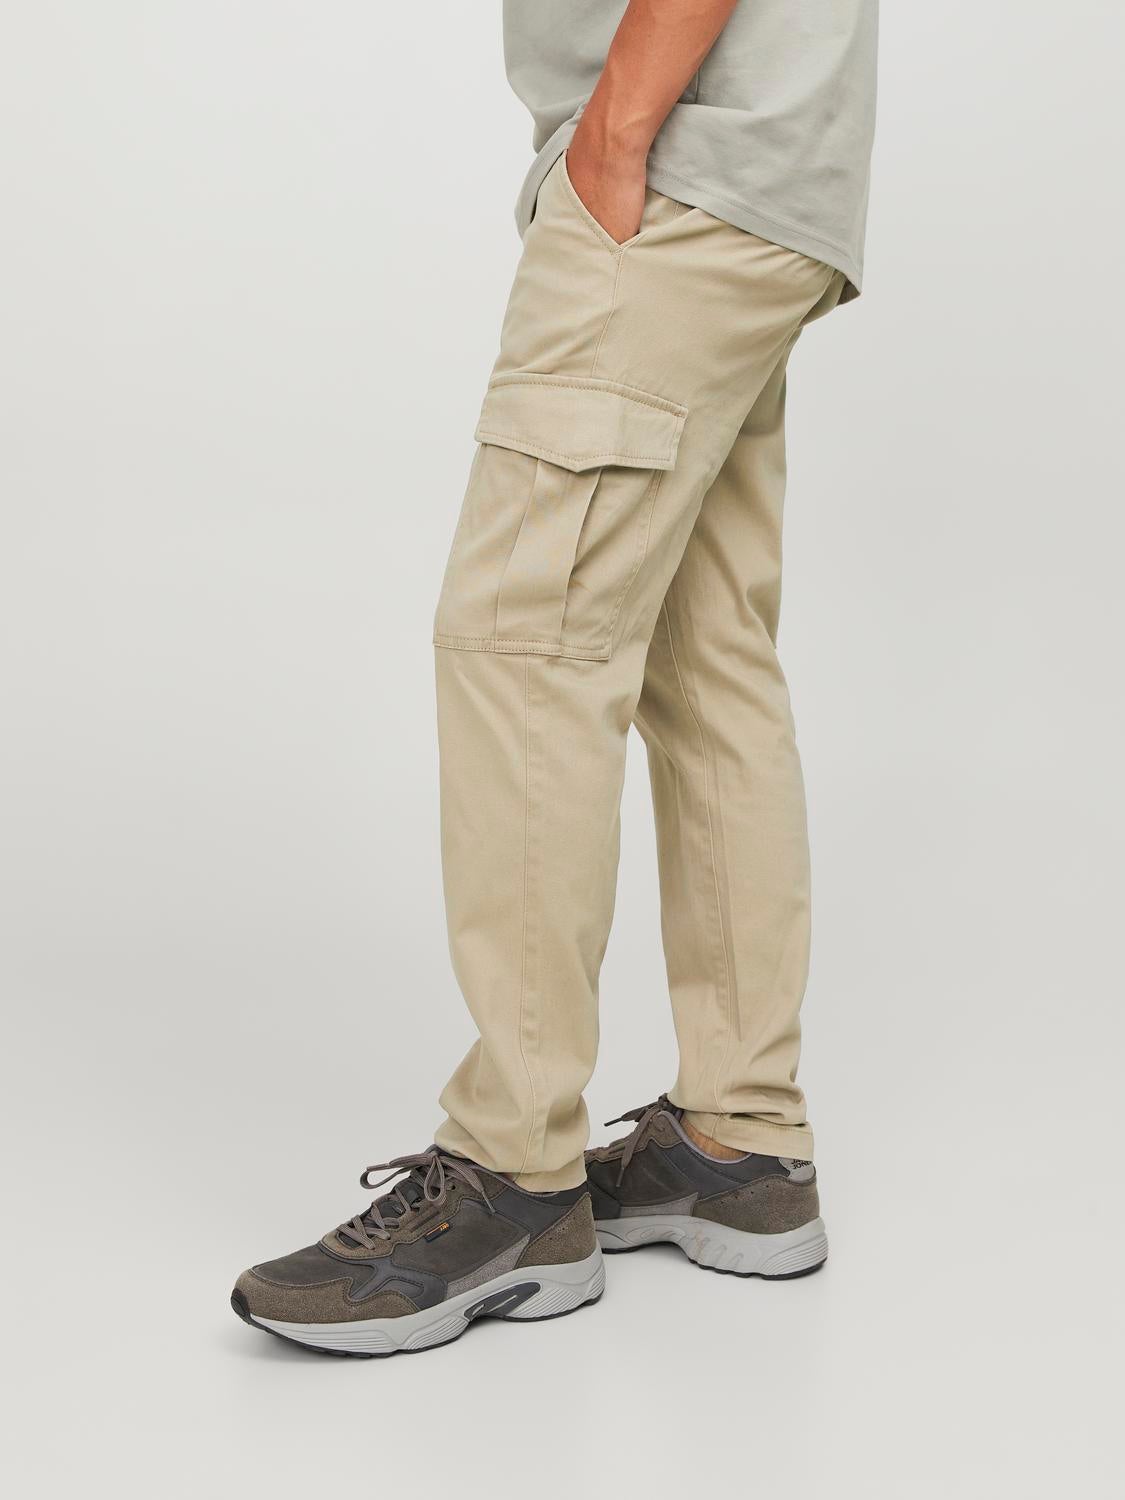 Buy Men's Beige Oversized Plus Size Cargo Trousers Online at Bewakoof